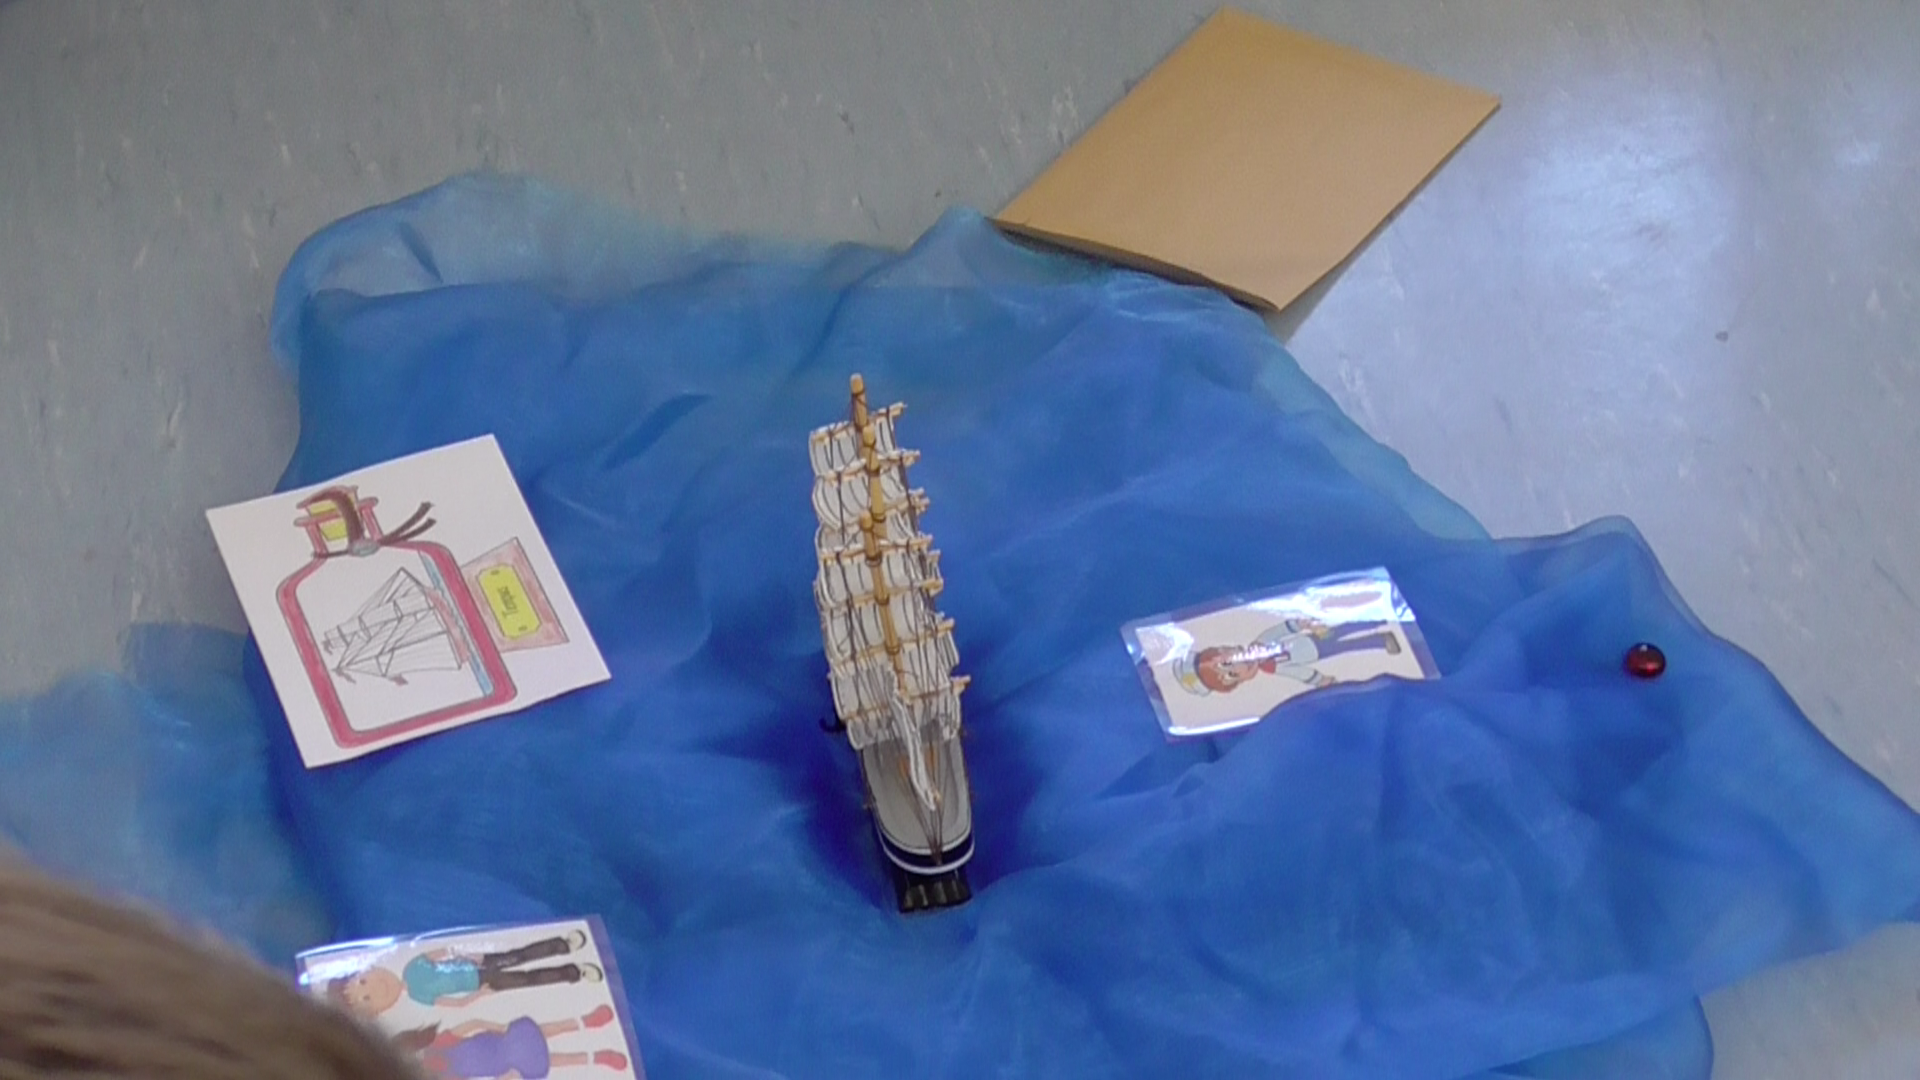 Requisiten zu der Einführung in das Thema "Zeitformen":Schiffsmodell; Abbildungen:  Flaschenpost, 2 Kinder als    Protagonist:innen, ein Brief an die Klasse, Muggelstein, blaues Tuch